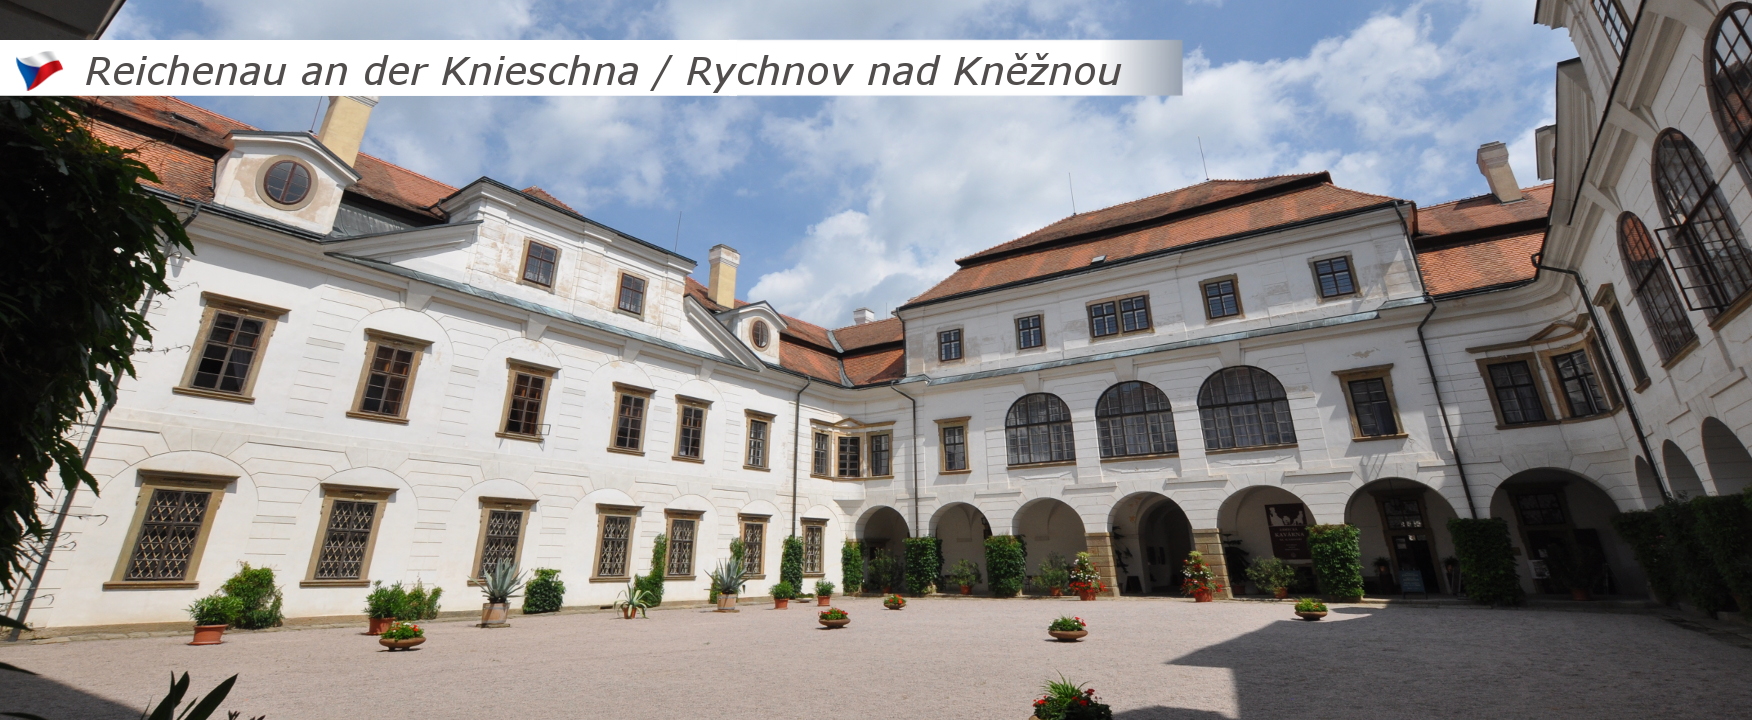 Rychnov nad Kněžnou / Reichenau an der Knieschna